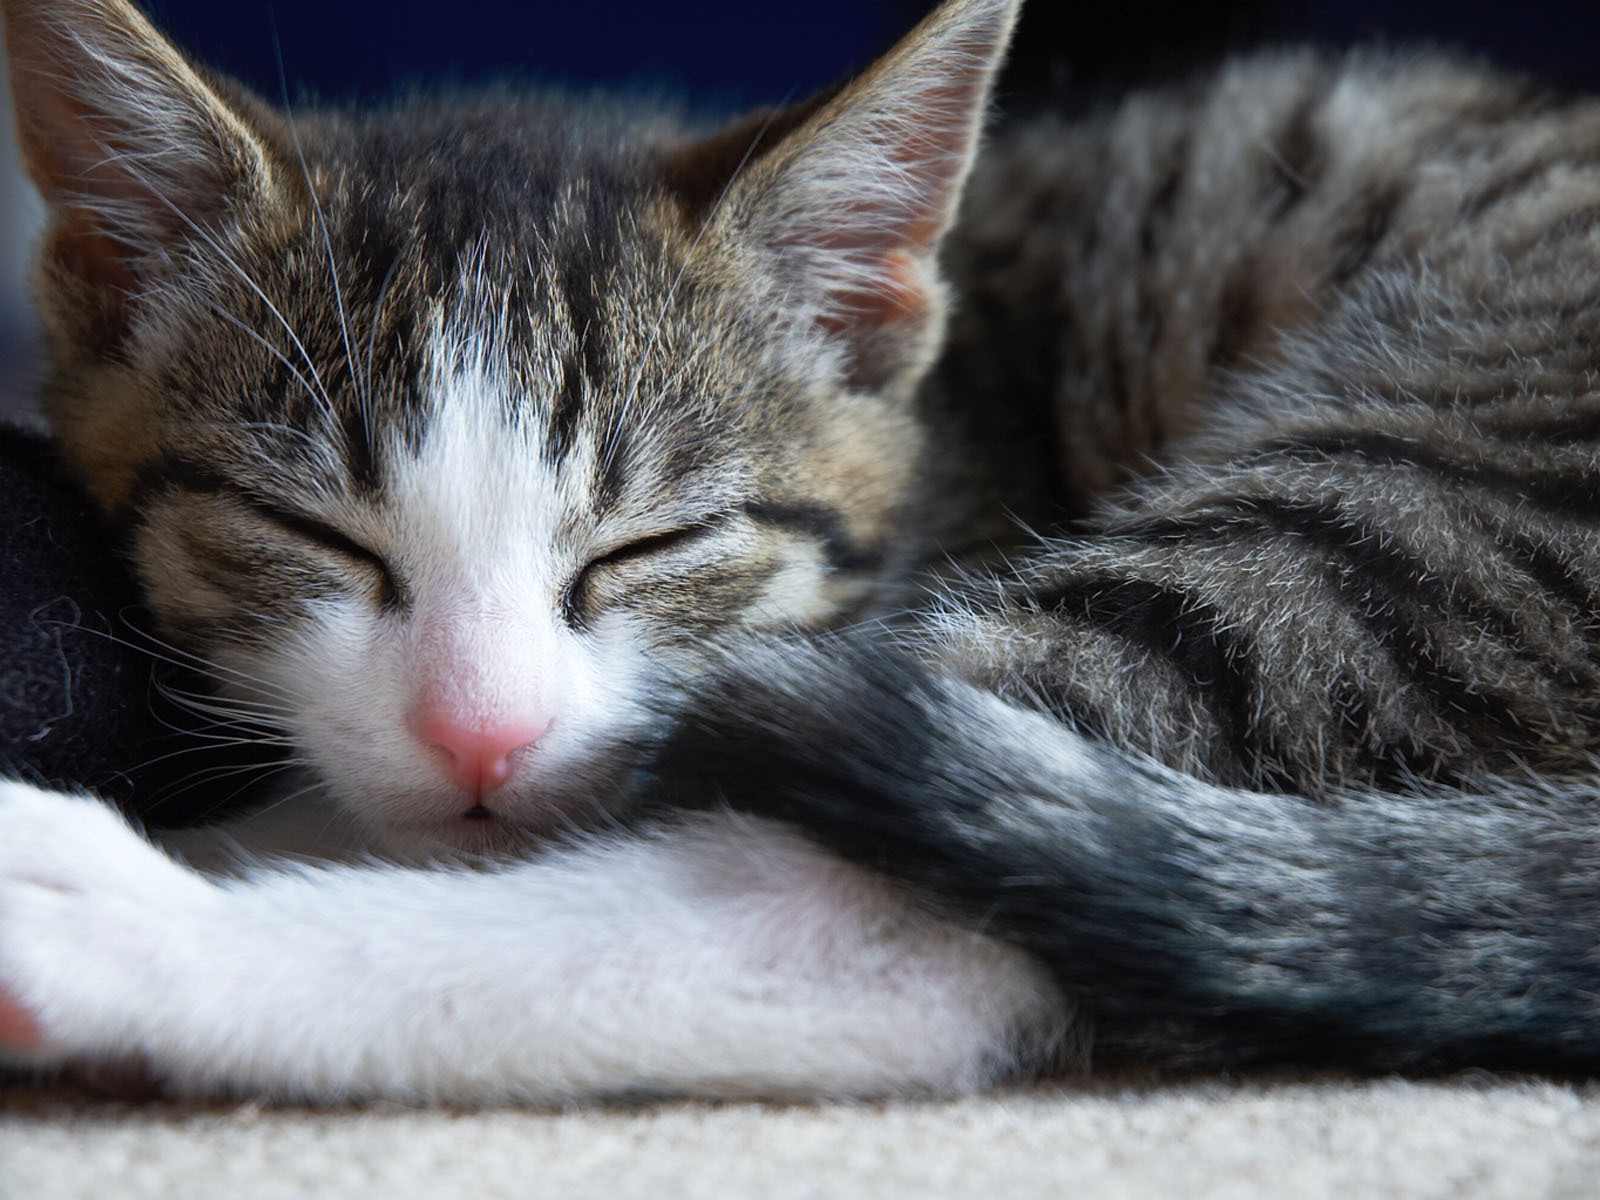 sleep: 31+ Cute Kitten Sleeping Pics